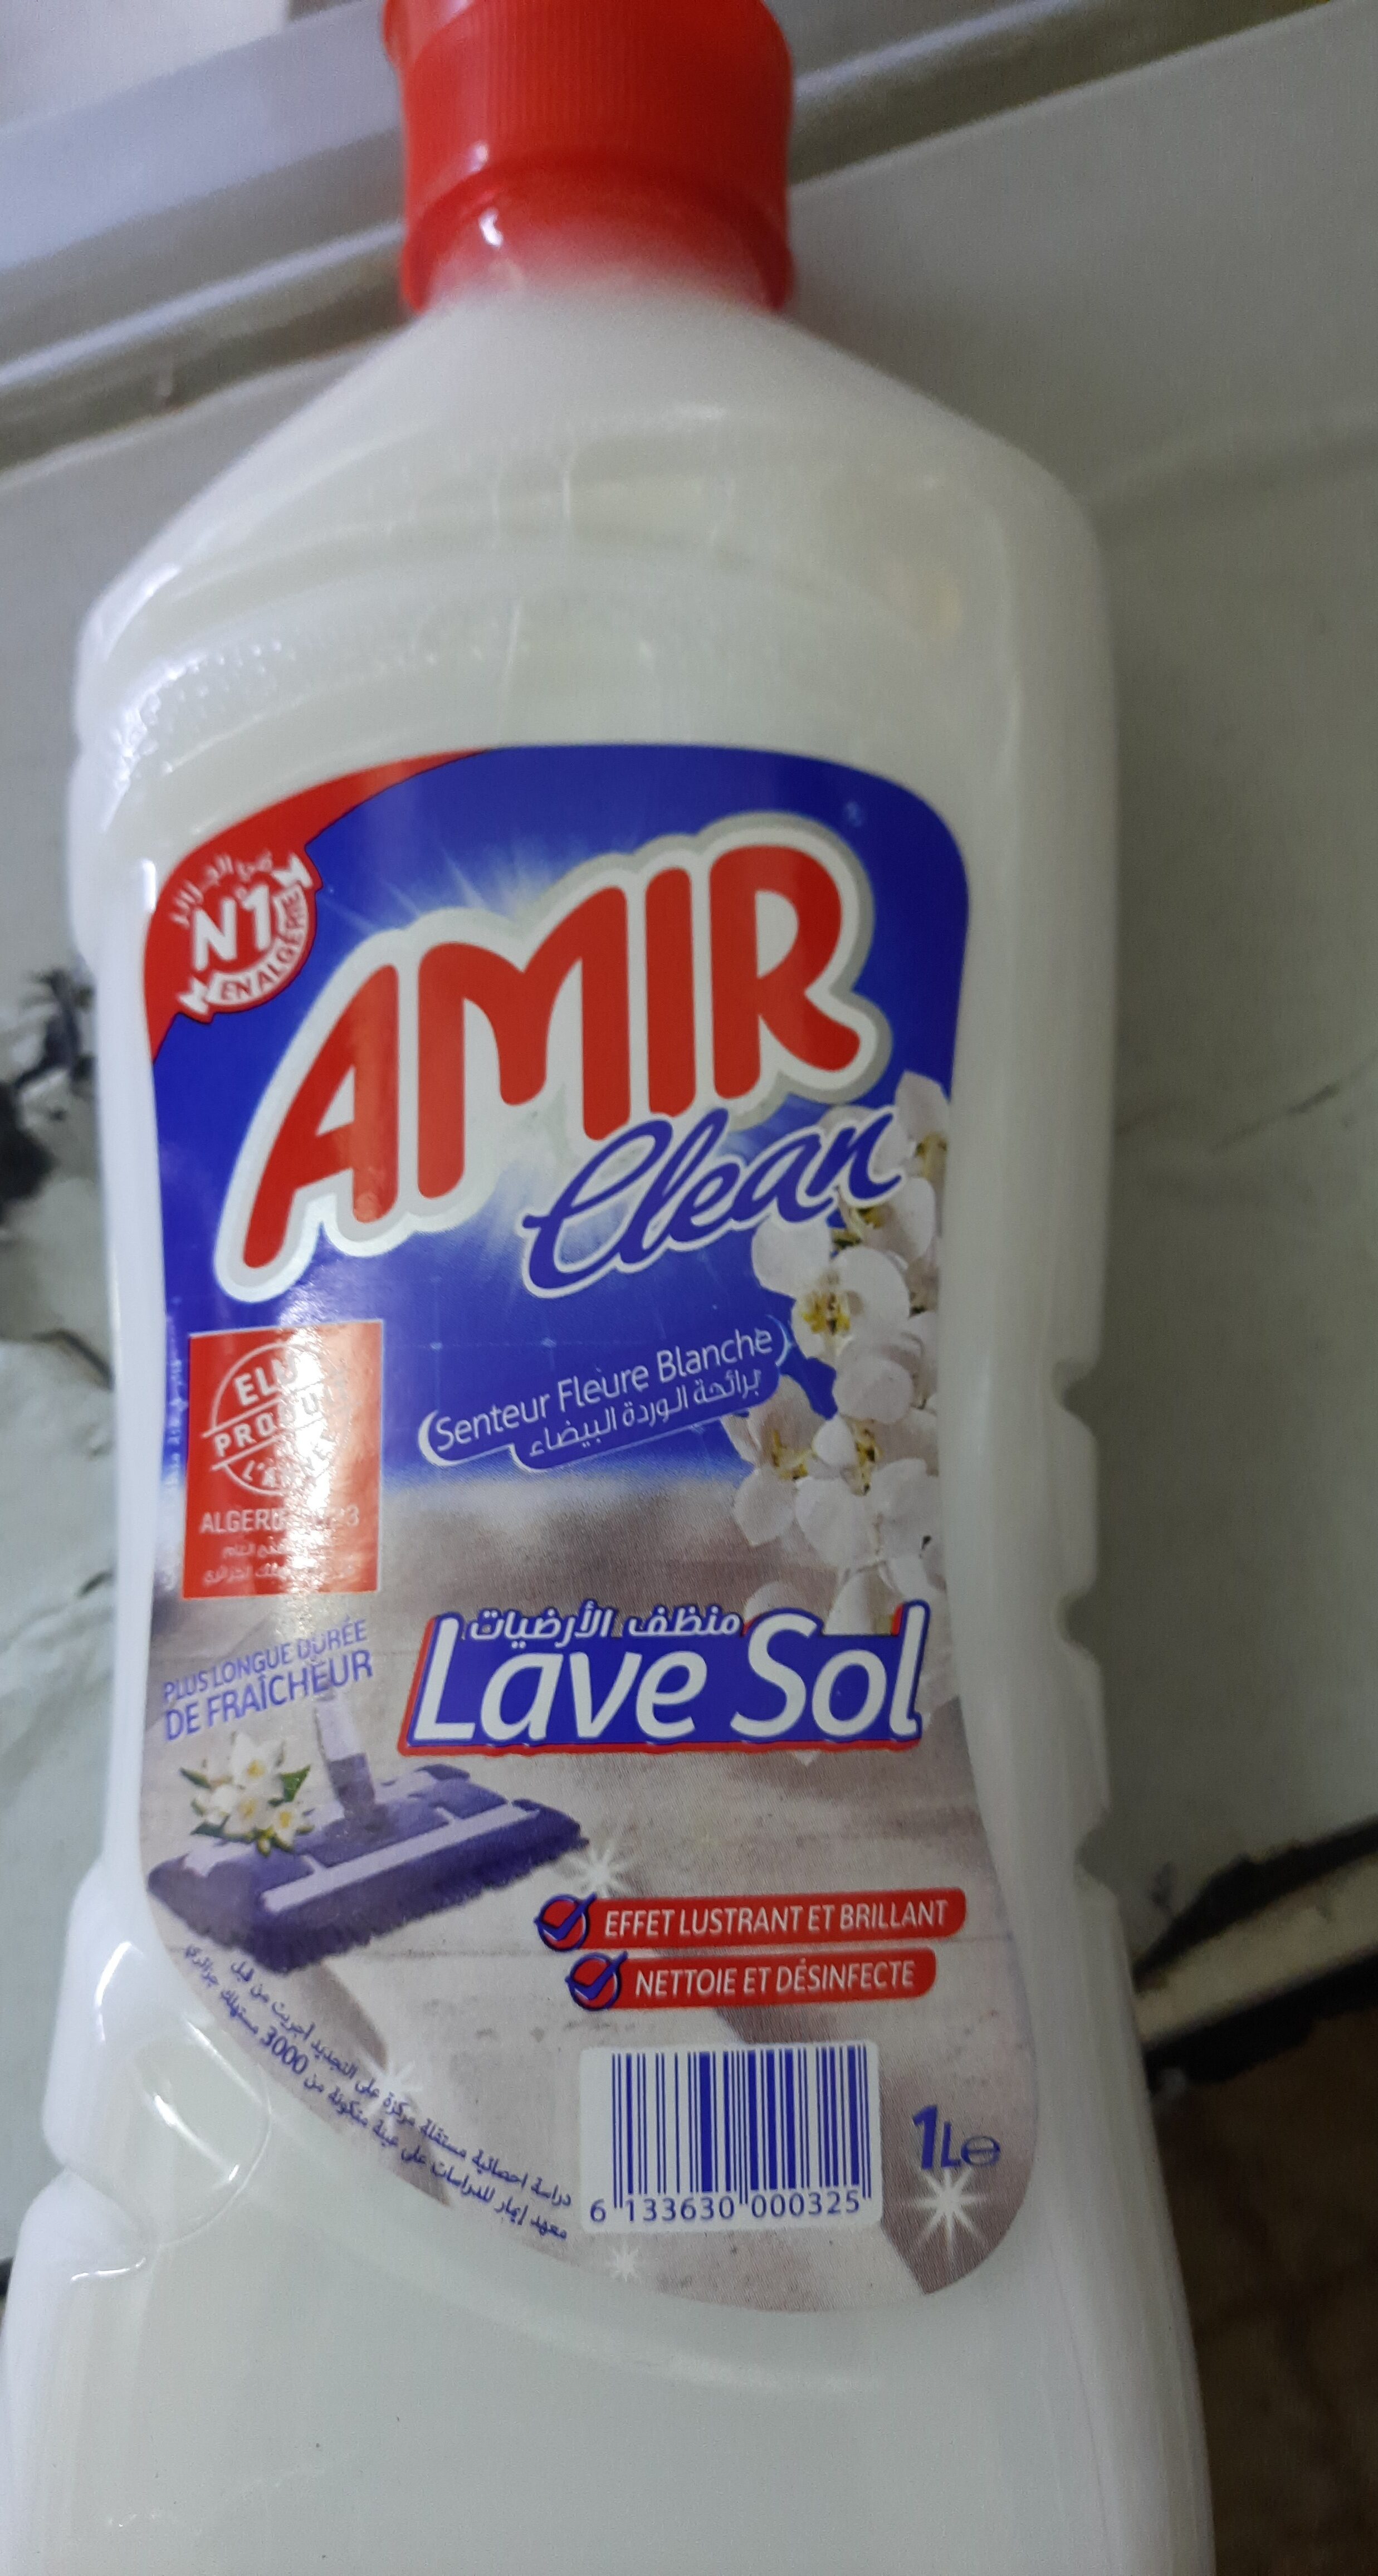 Amie clean - Product - es